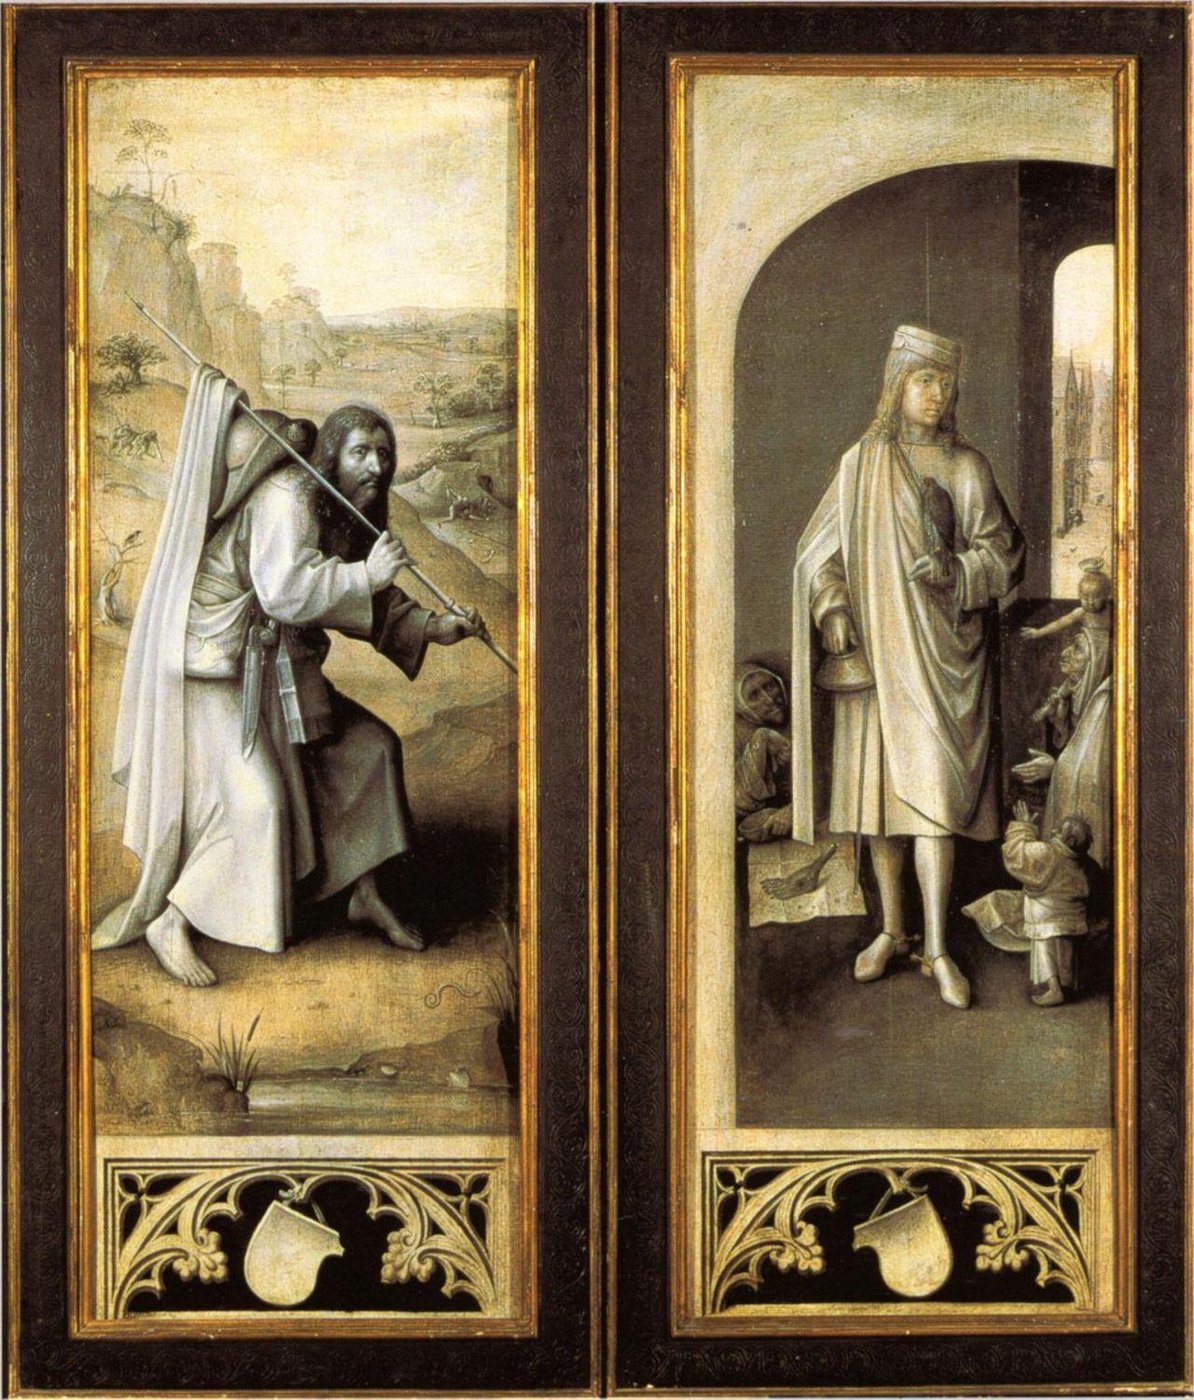 Ansicht der Außenseite eines Flügelaltars mit jeweils einer Figur, im linken Flügel ein buckliger Mann in der Natur, rechts ein Mann in Roben in einem Raum,der von Leuten angebettelt wird und vergoldetem Holzrahmen